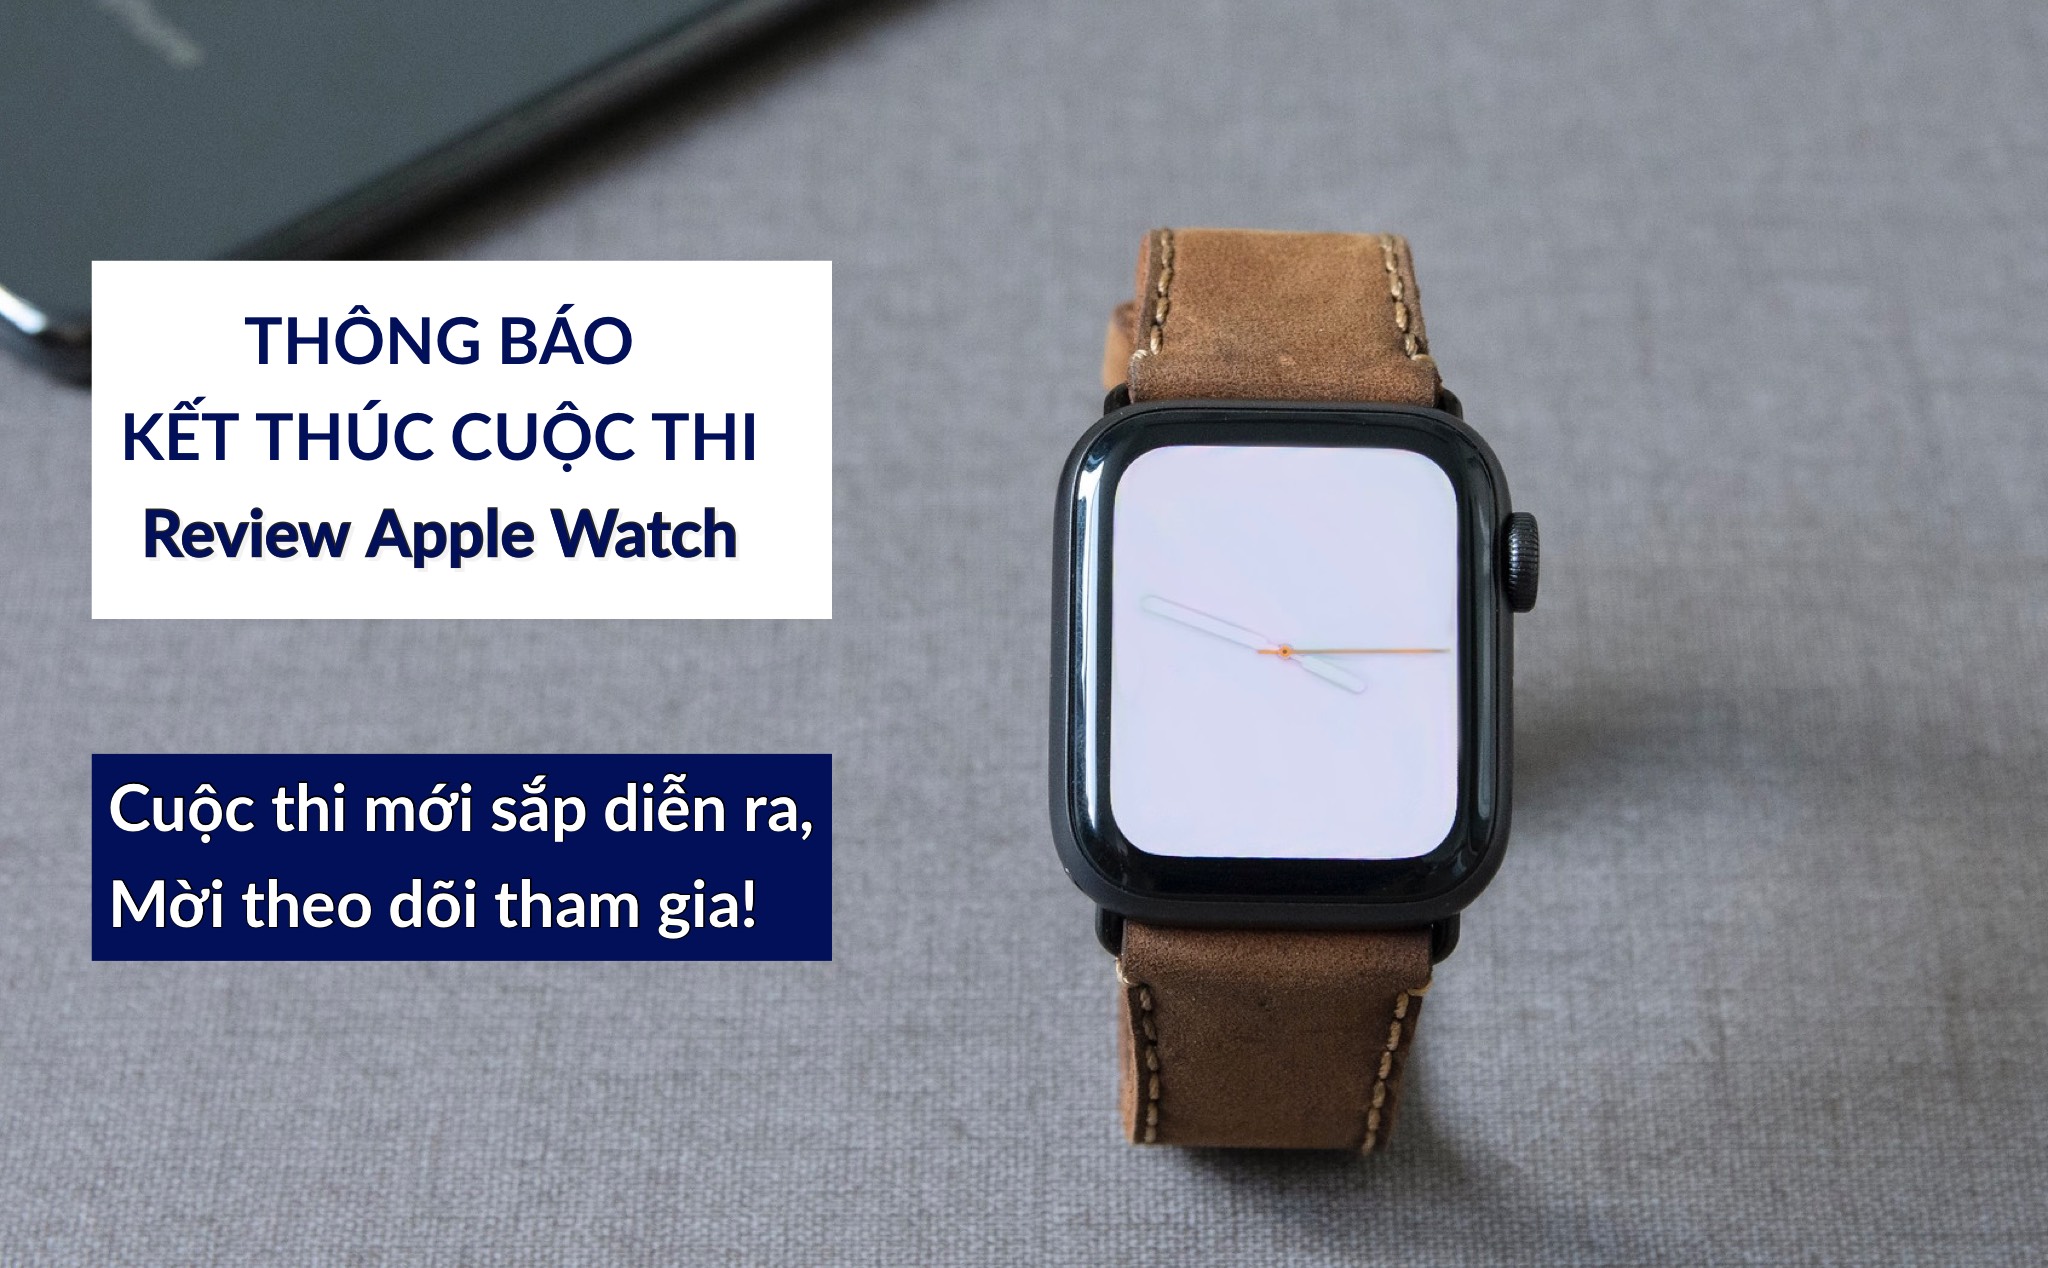 Thông báo kết thúc cuộc thi Review Apple Watch, mời theo dõi cuộc thi mới sắp diễn ra